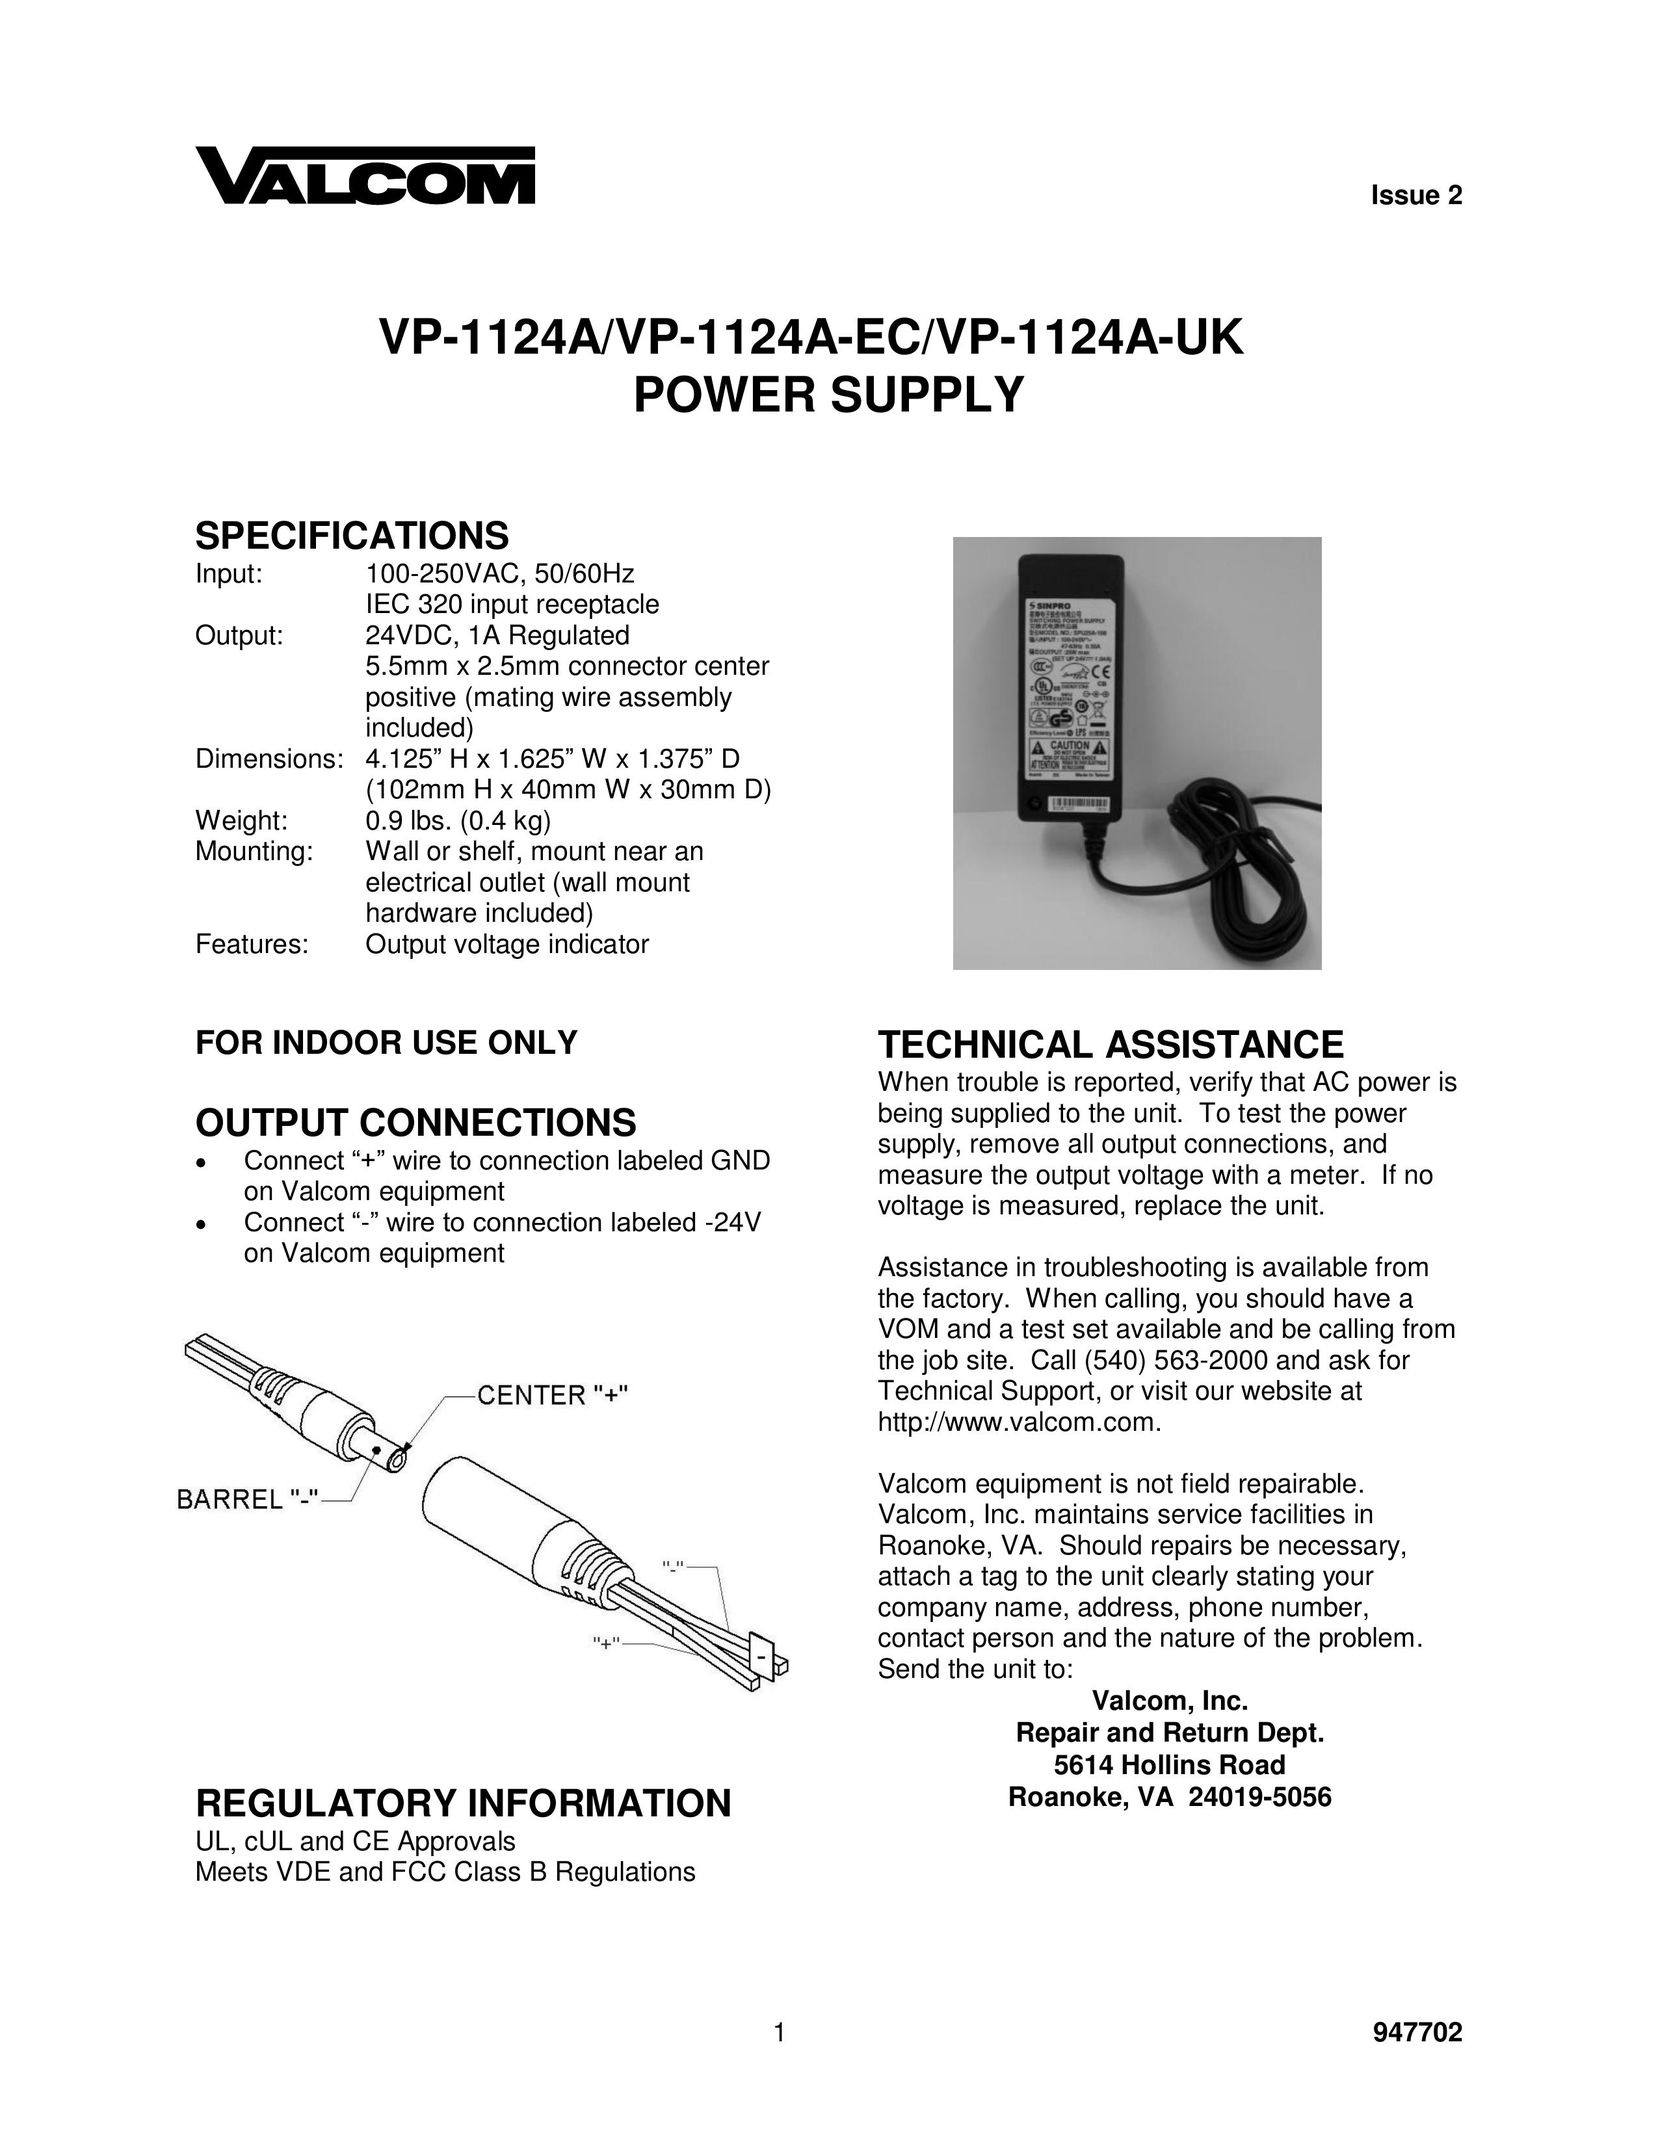 Valcom VP-1124A Power Supply User Manual